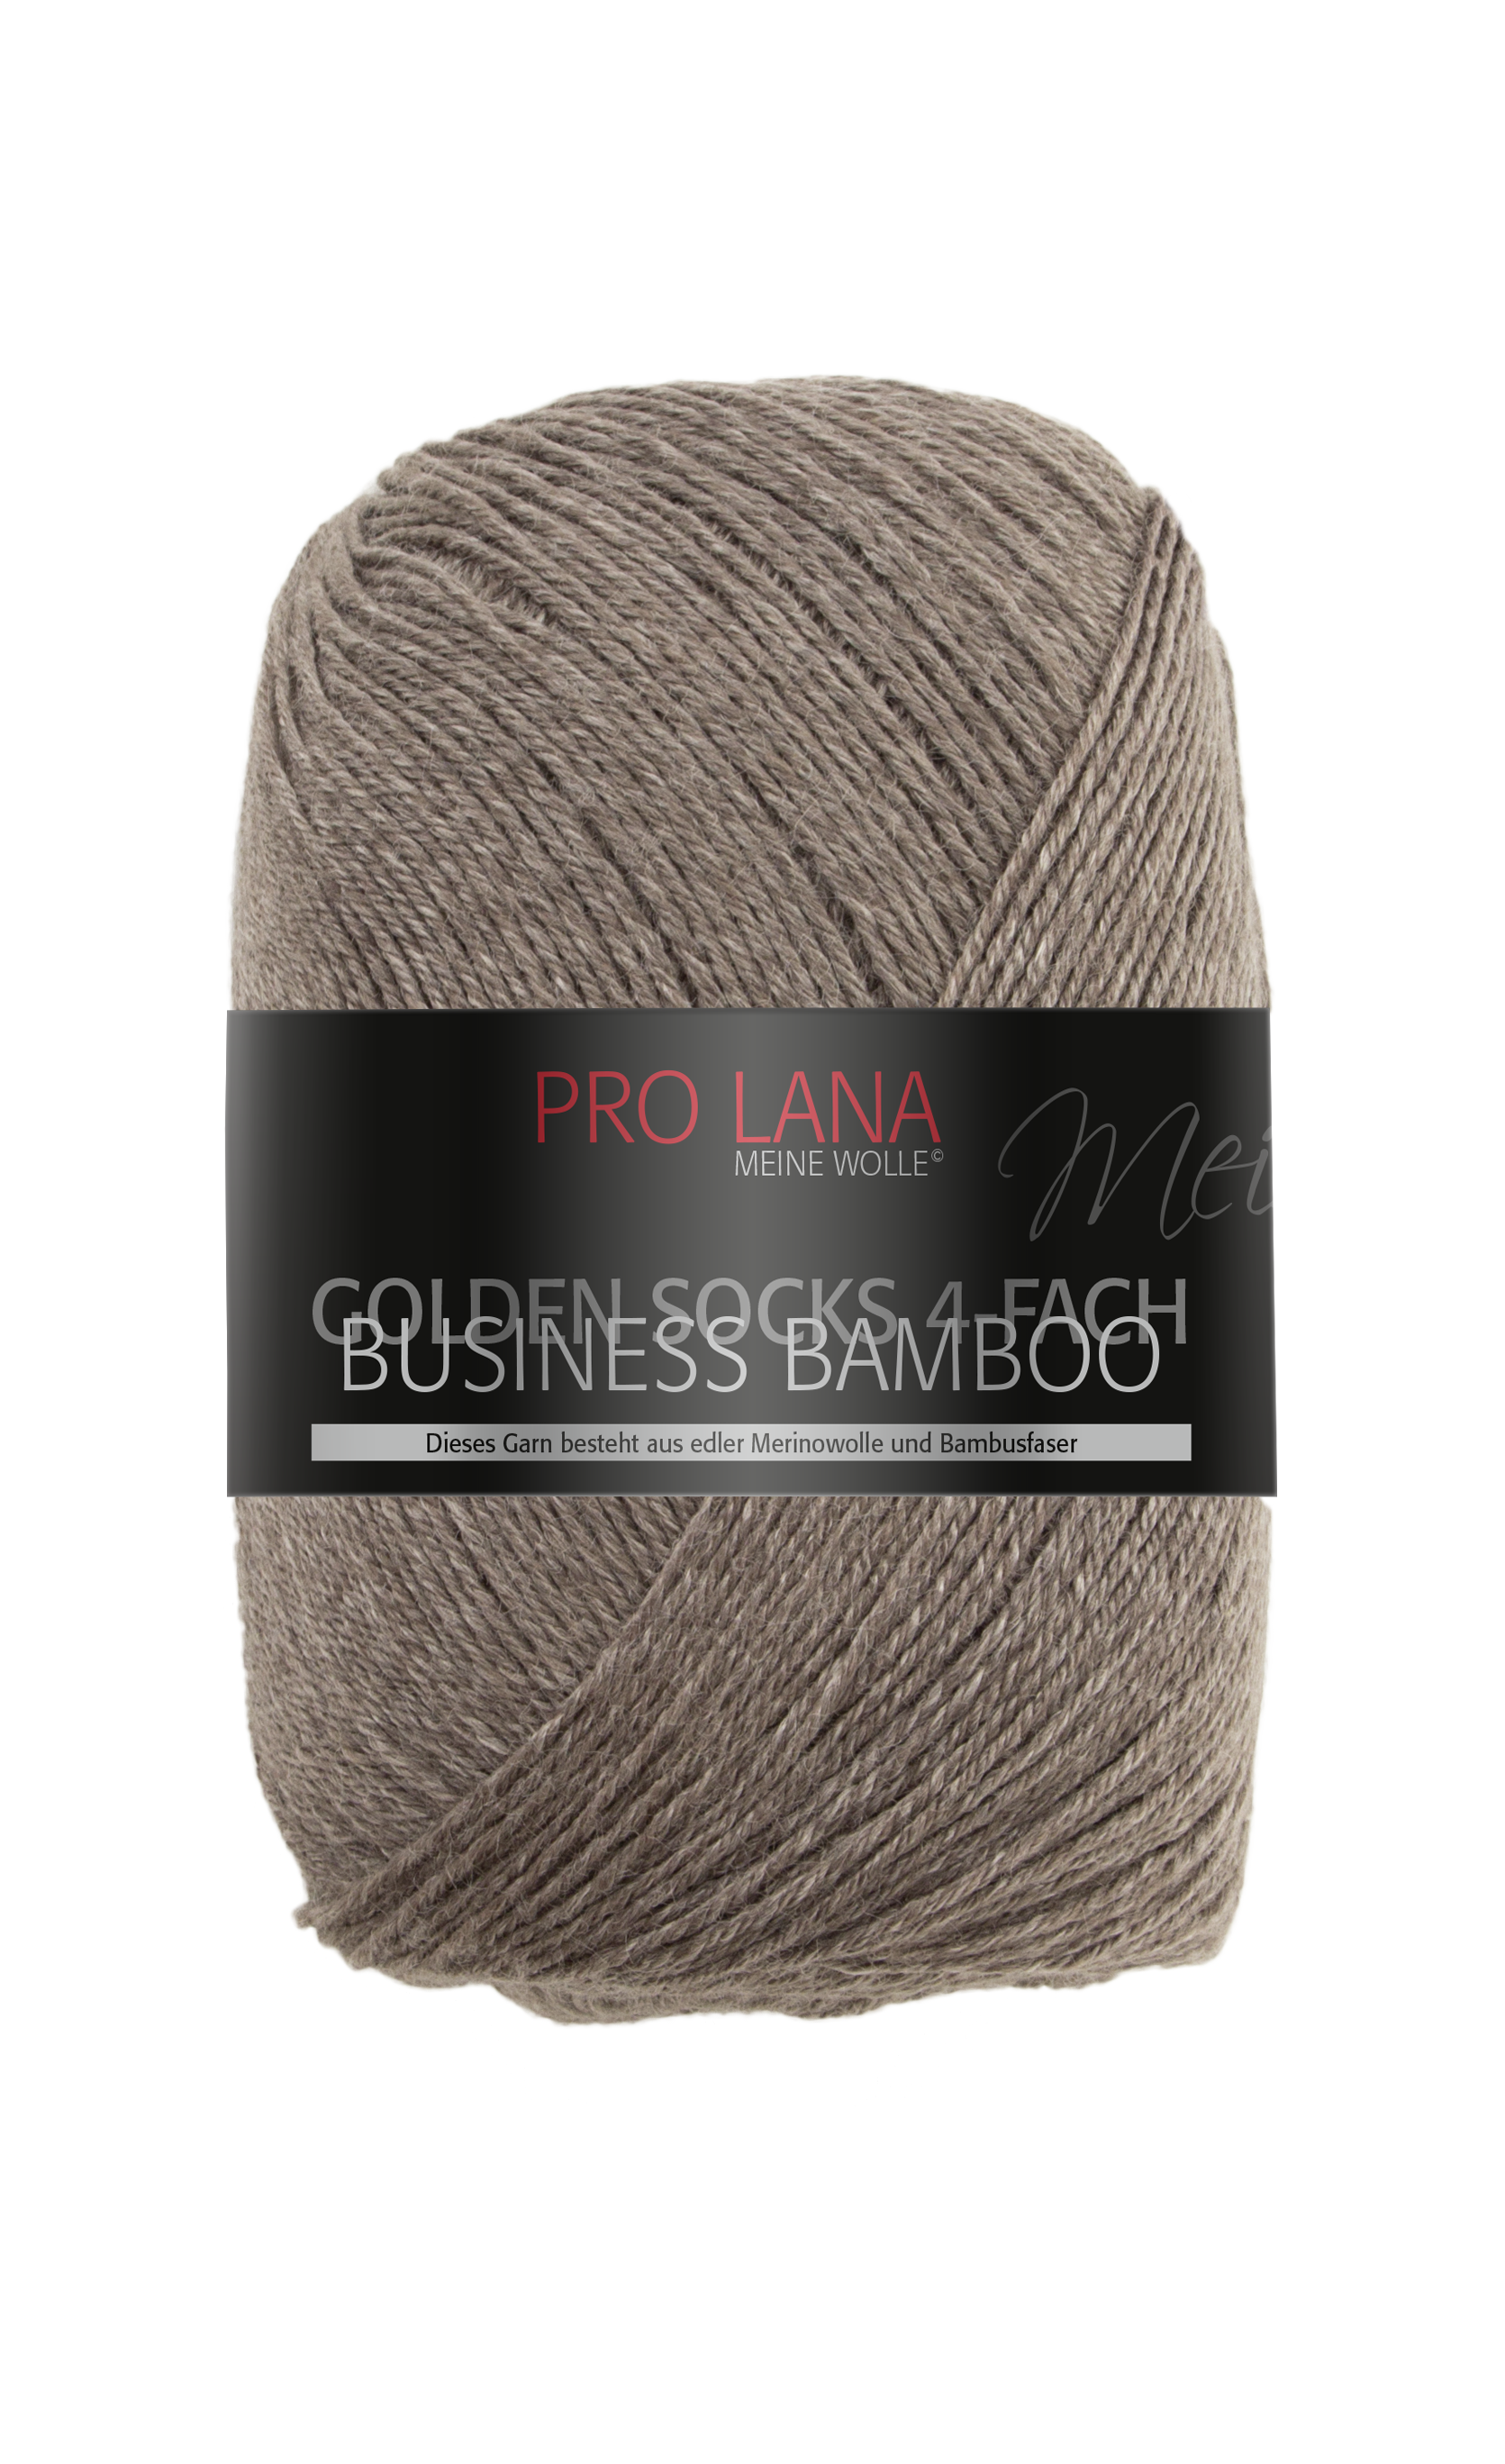 pro lana golden socks business bamboo